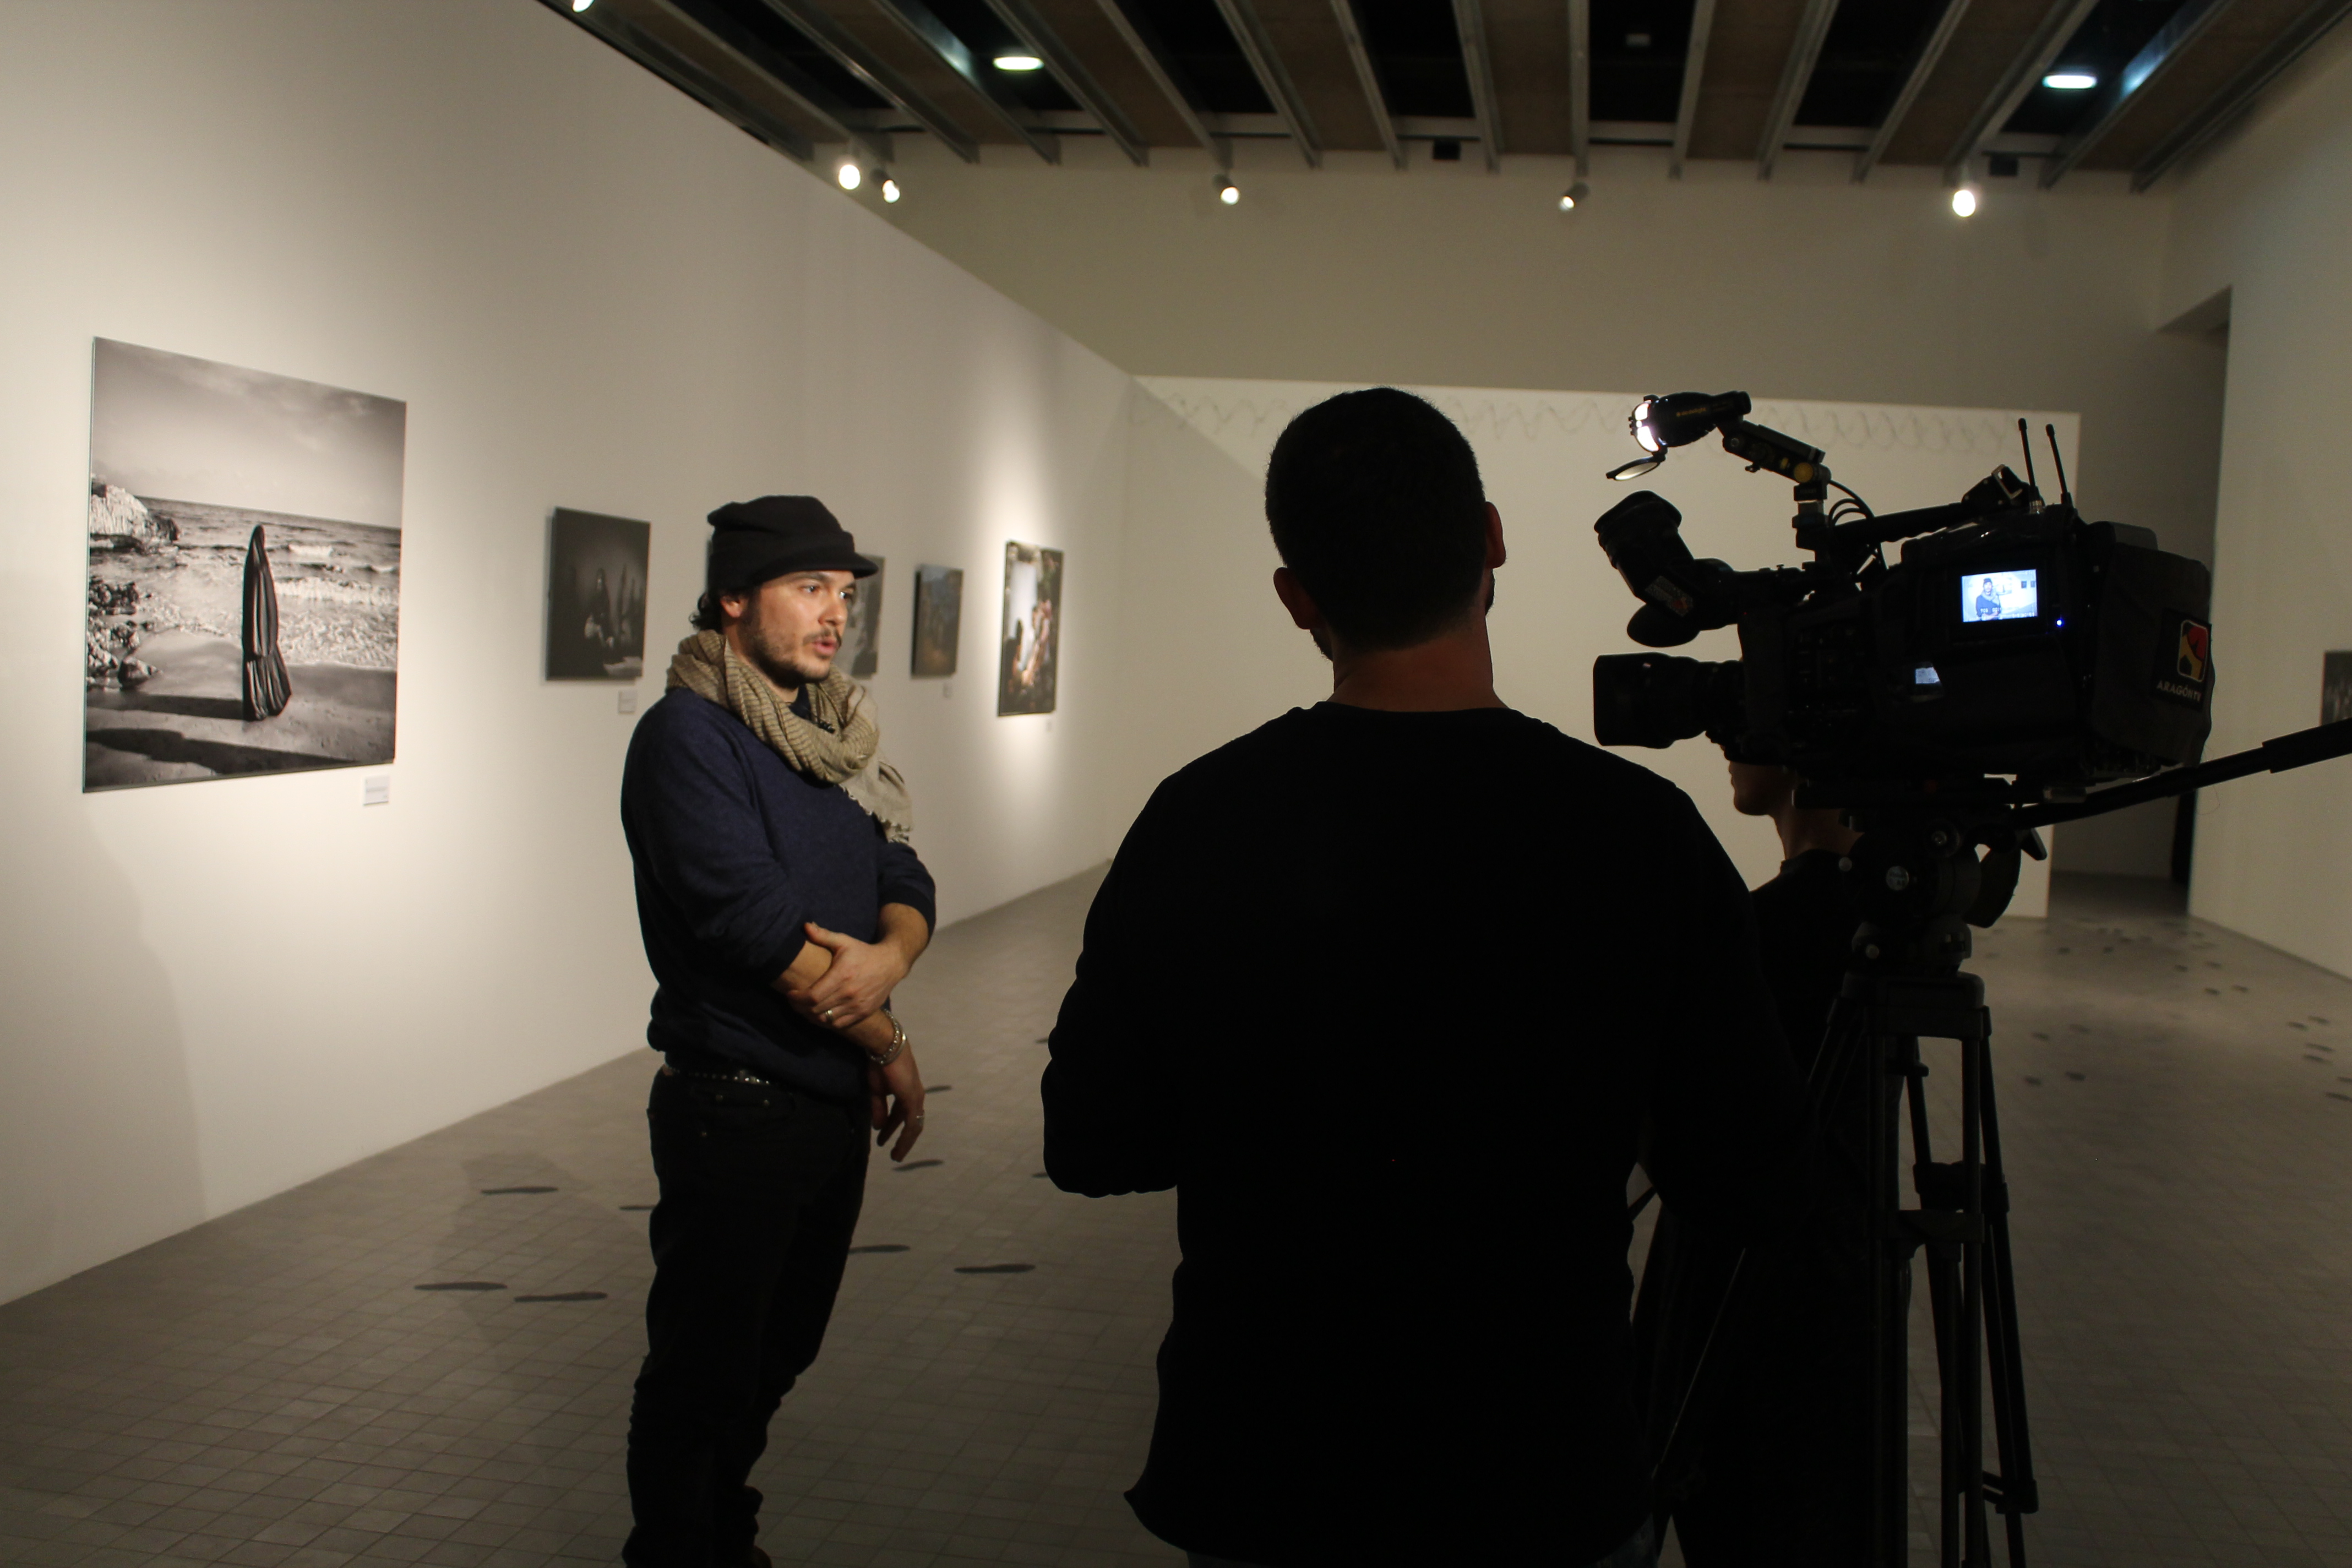 Entrevista de la televisión al fotoperiodista y miembro de MeMo, Fabio Bucciarelli